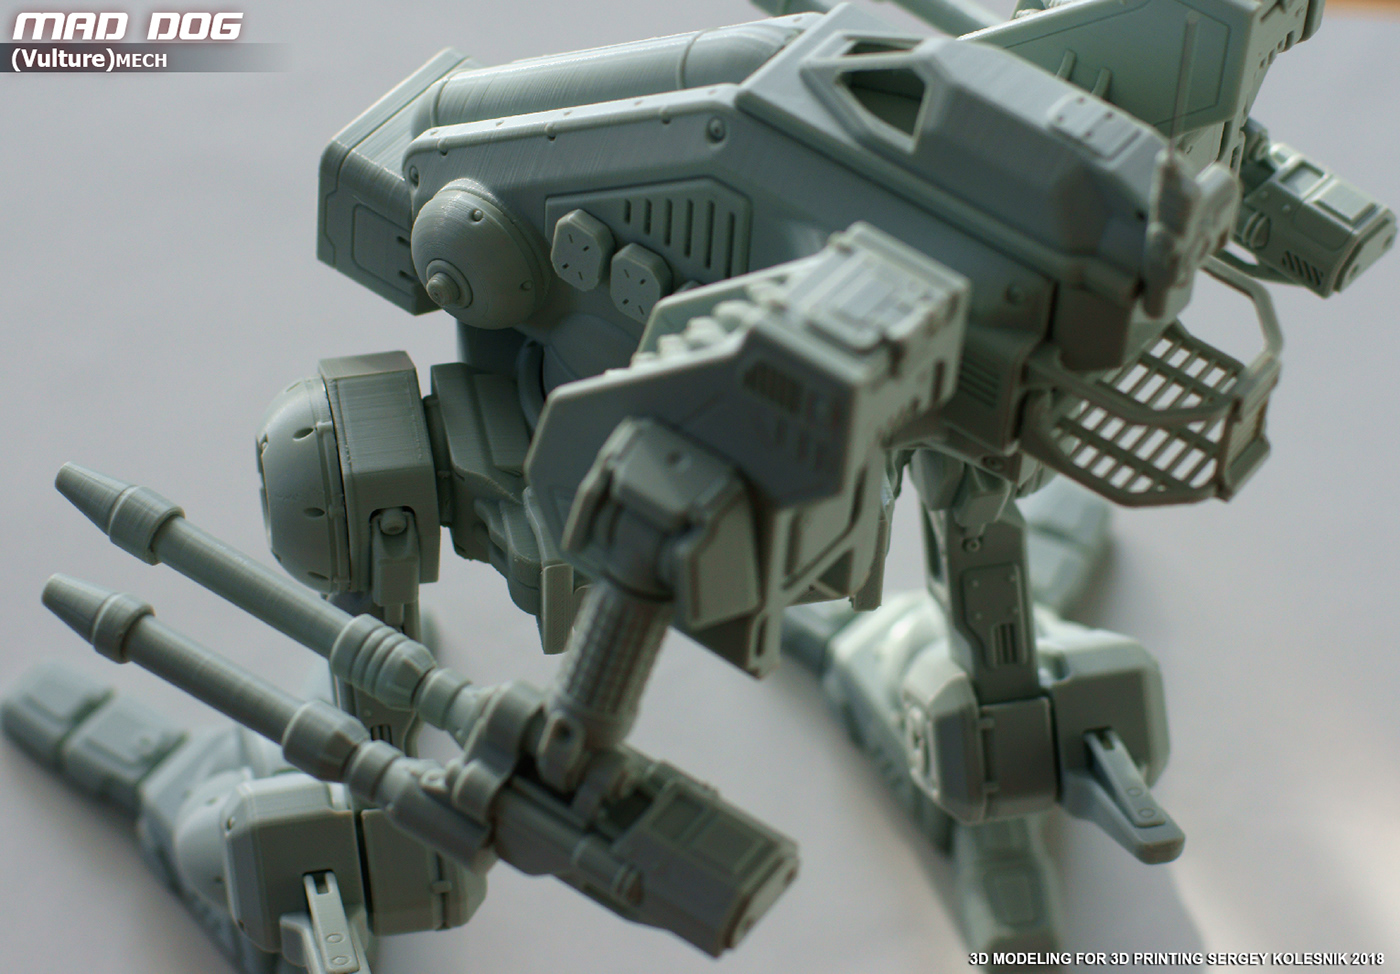 maddog mech mecha toys robot battletech 3dprinting 3dprint 3D Mechwarrior